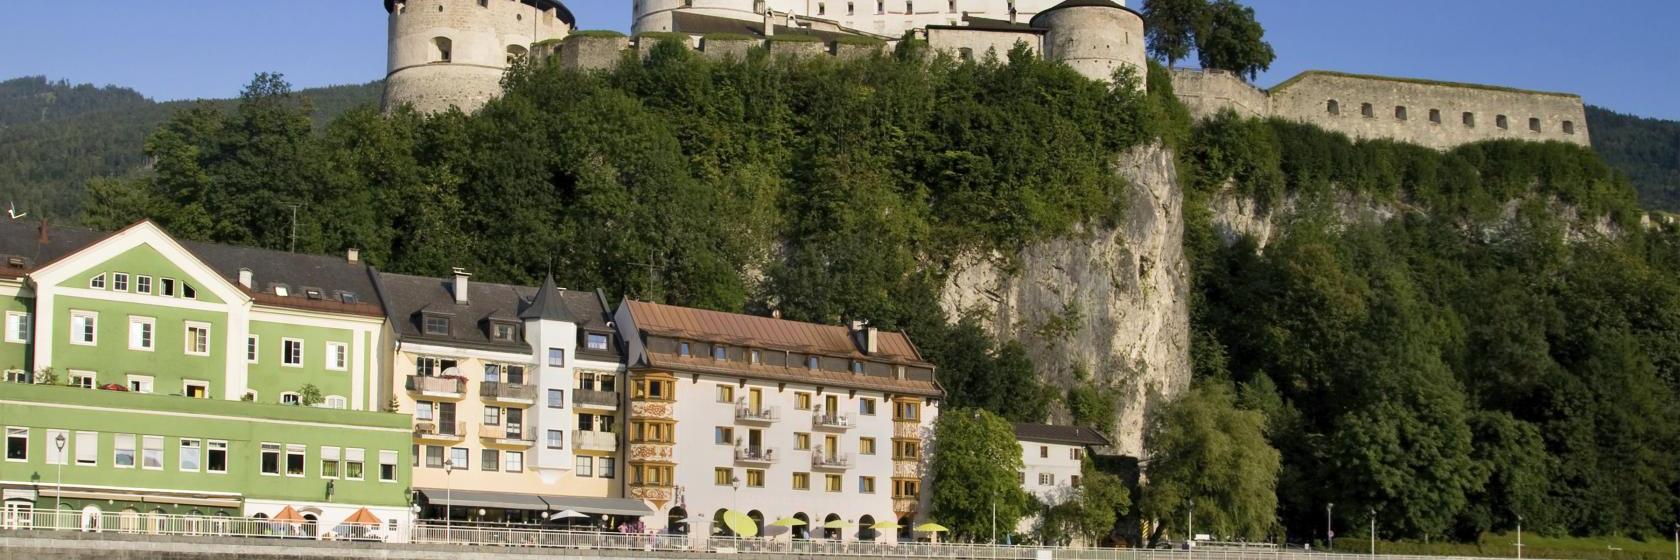 10 Best Kufstein Hotels, Austria (From $86)